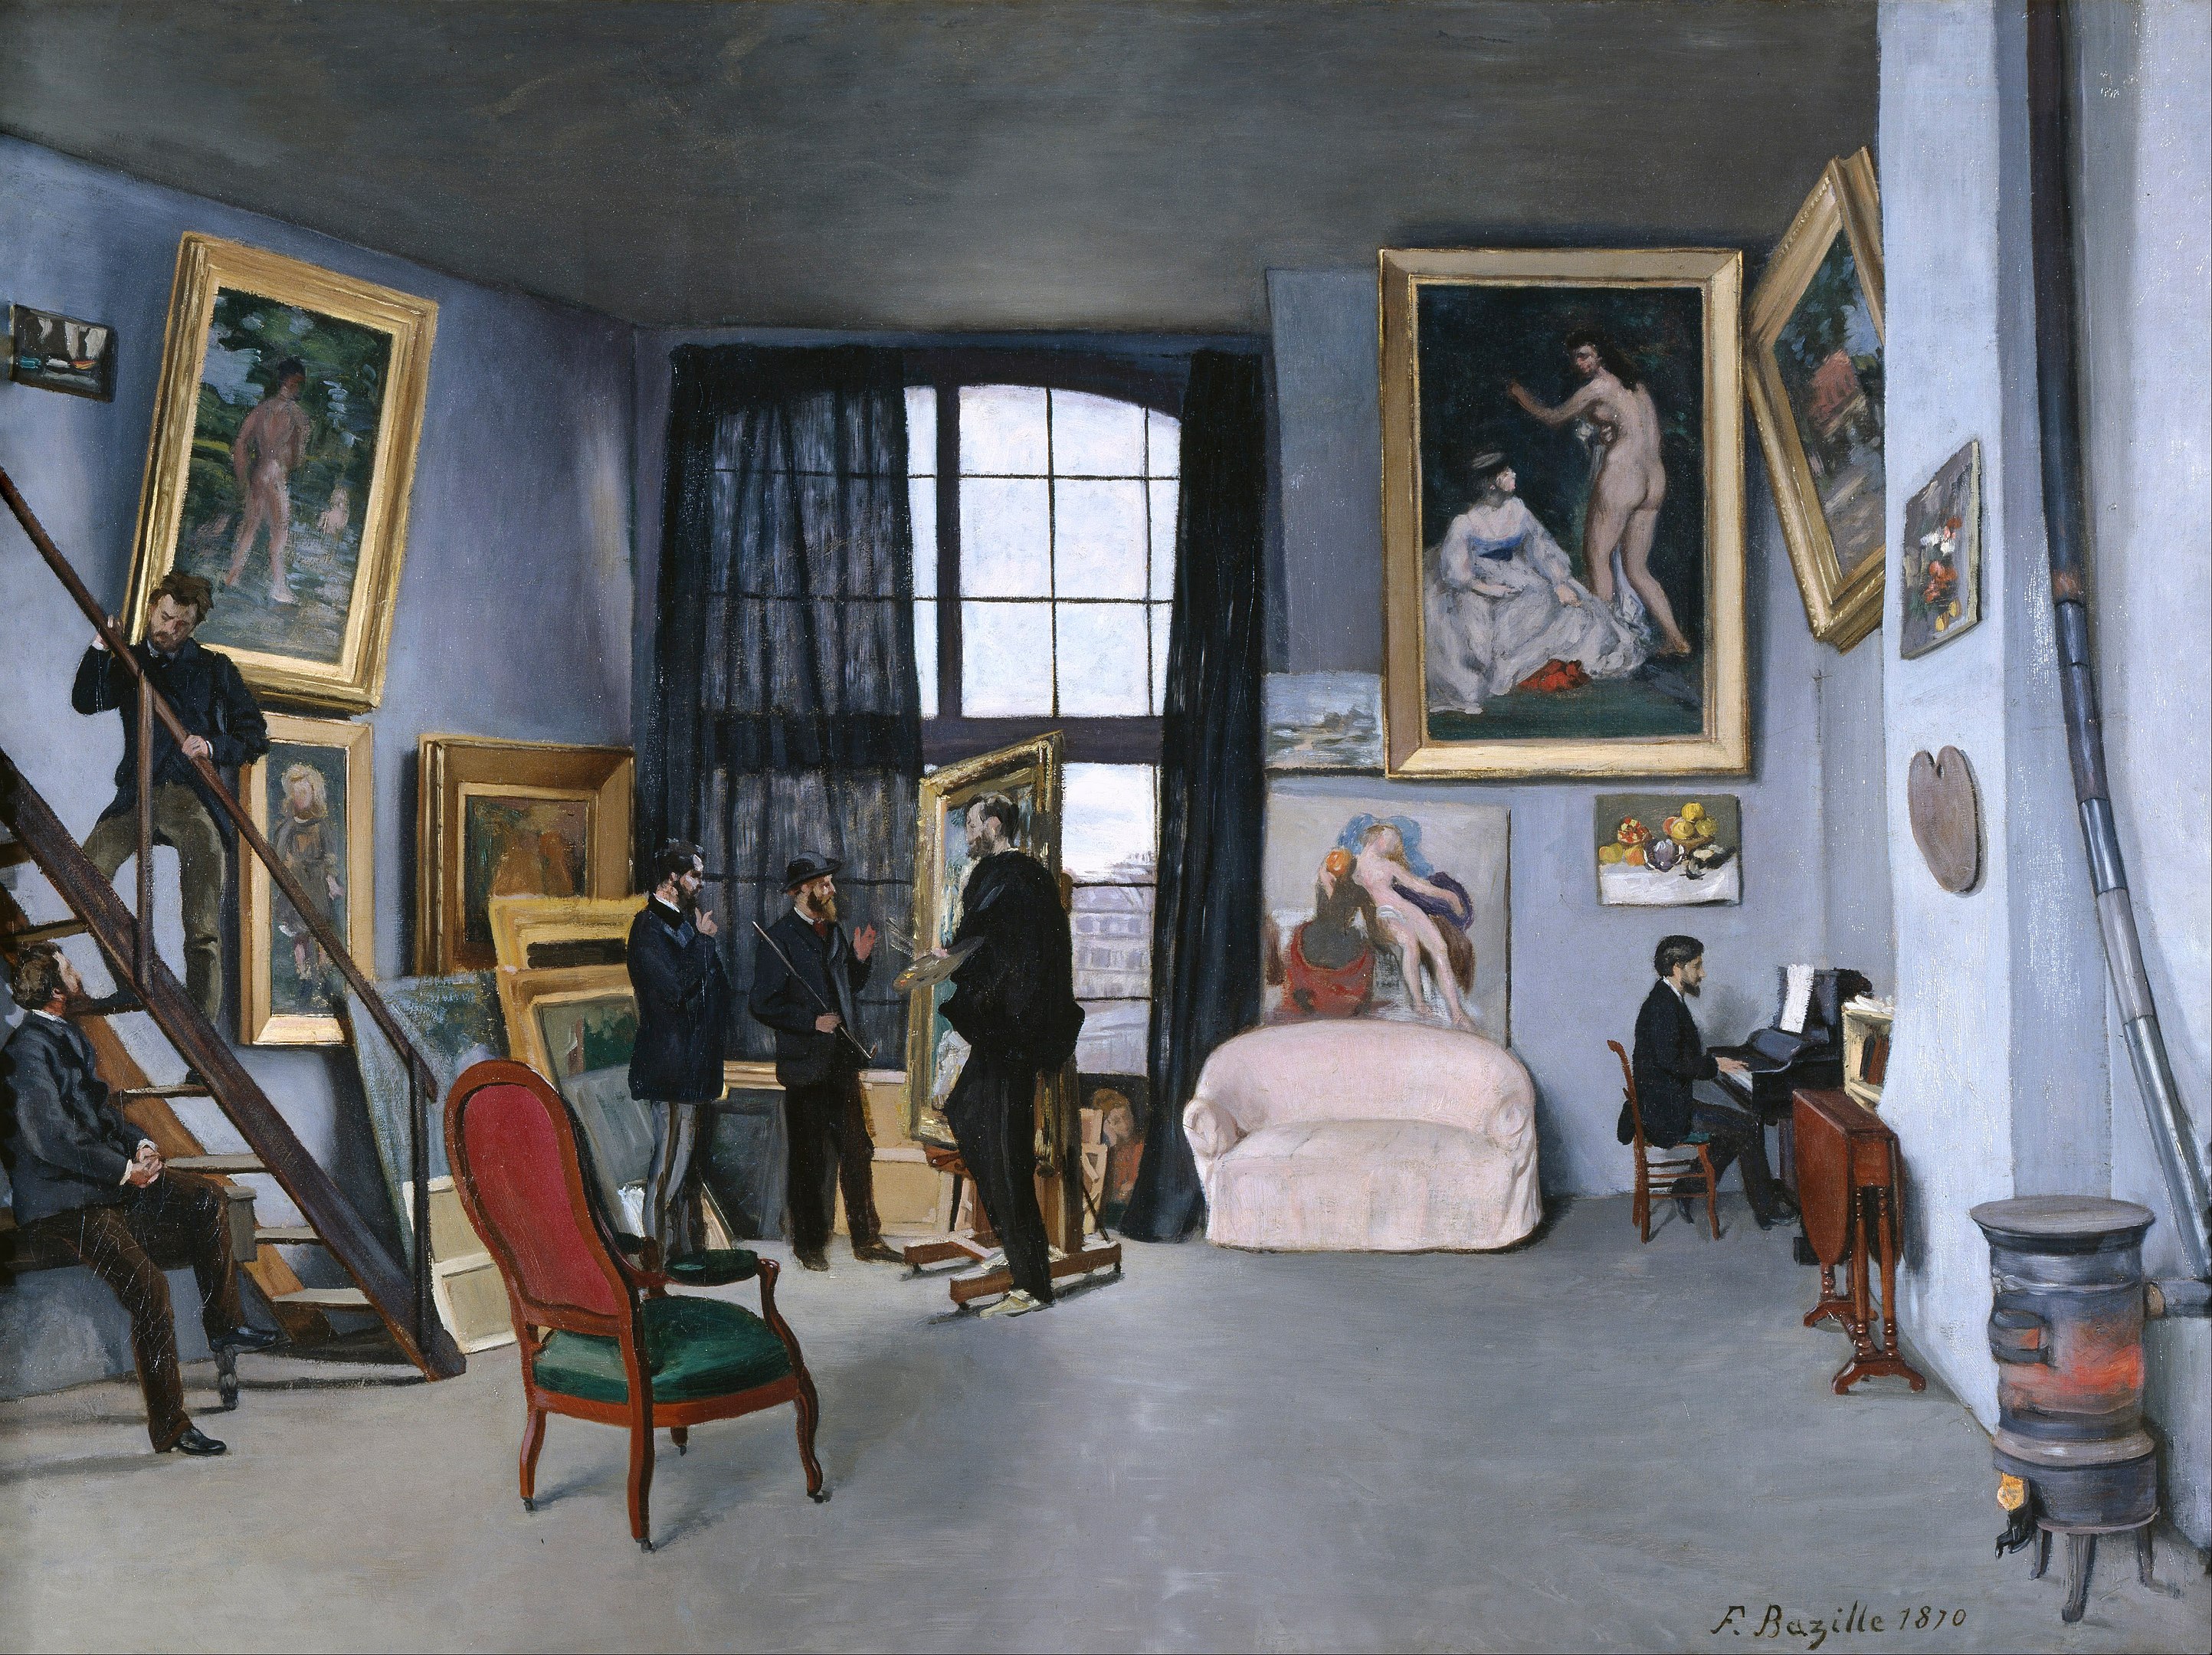 바지유의 화실(Bazille's Studio) by Frédéric Bazille - 1870년 - 98 x 128 cm 